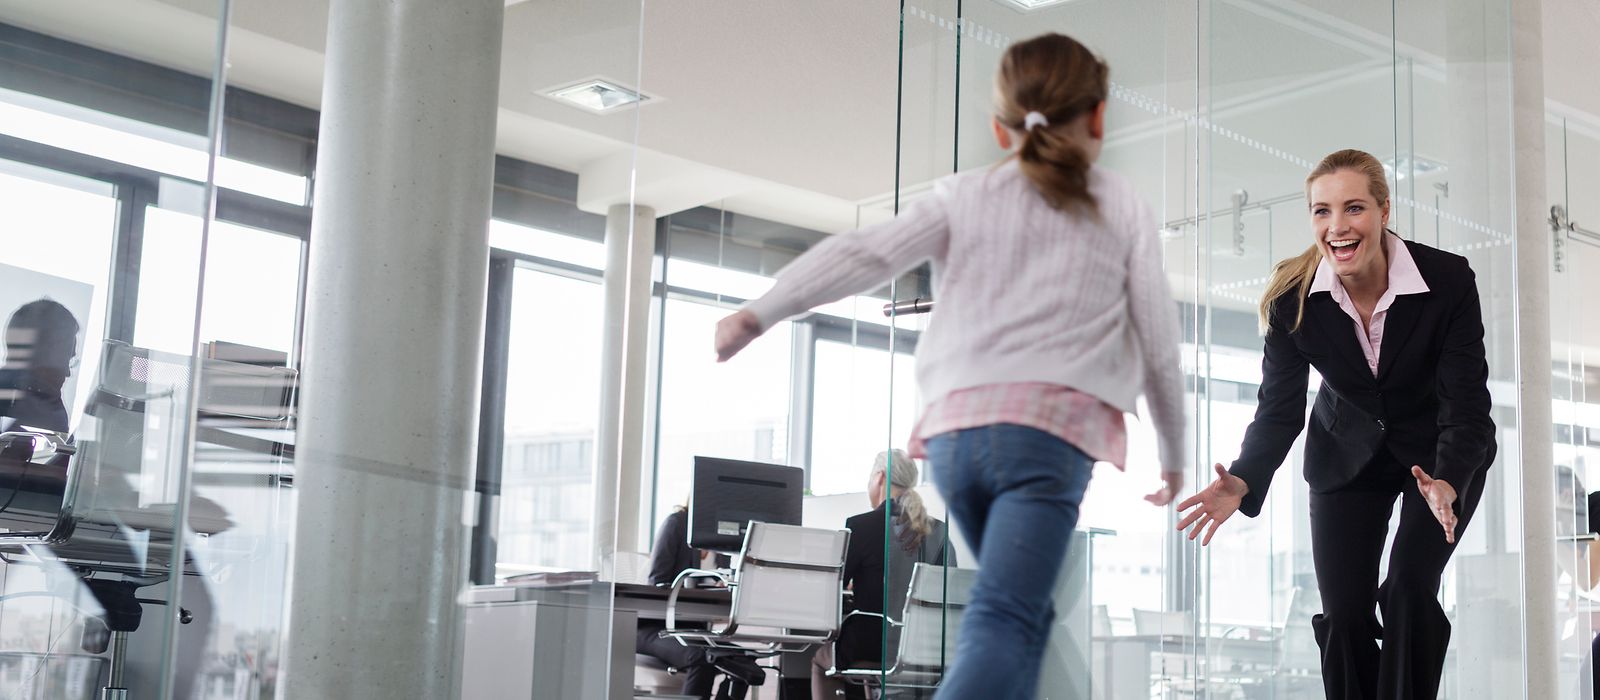 Ein Kind rennt auf eine Frau in einem Büro zu.